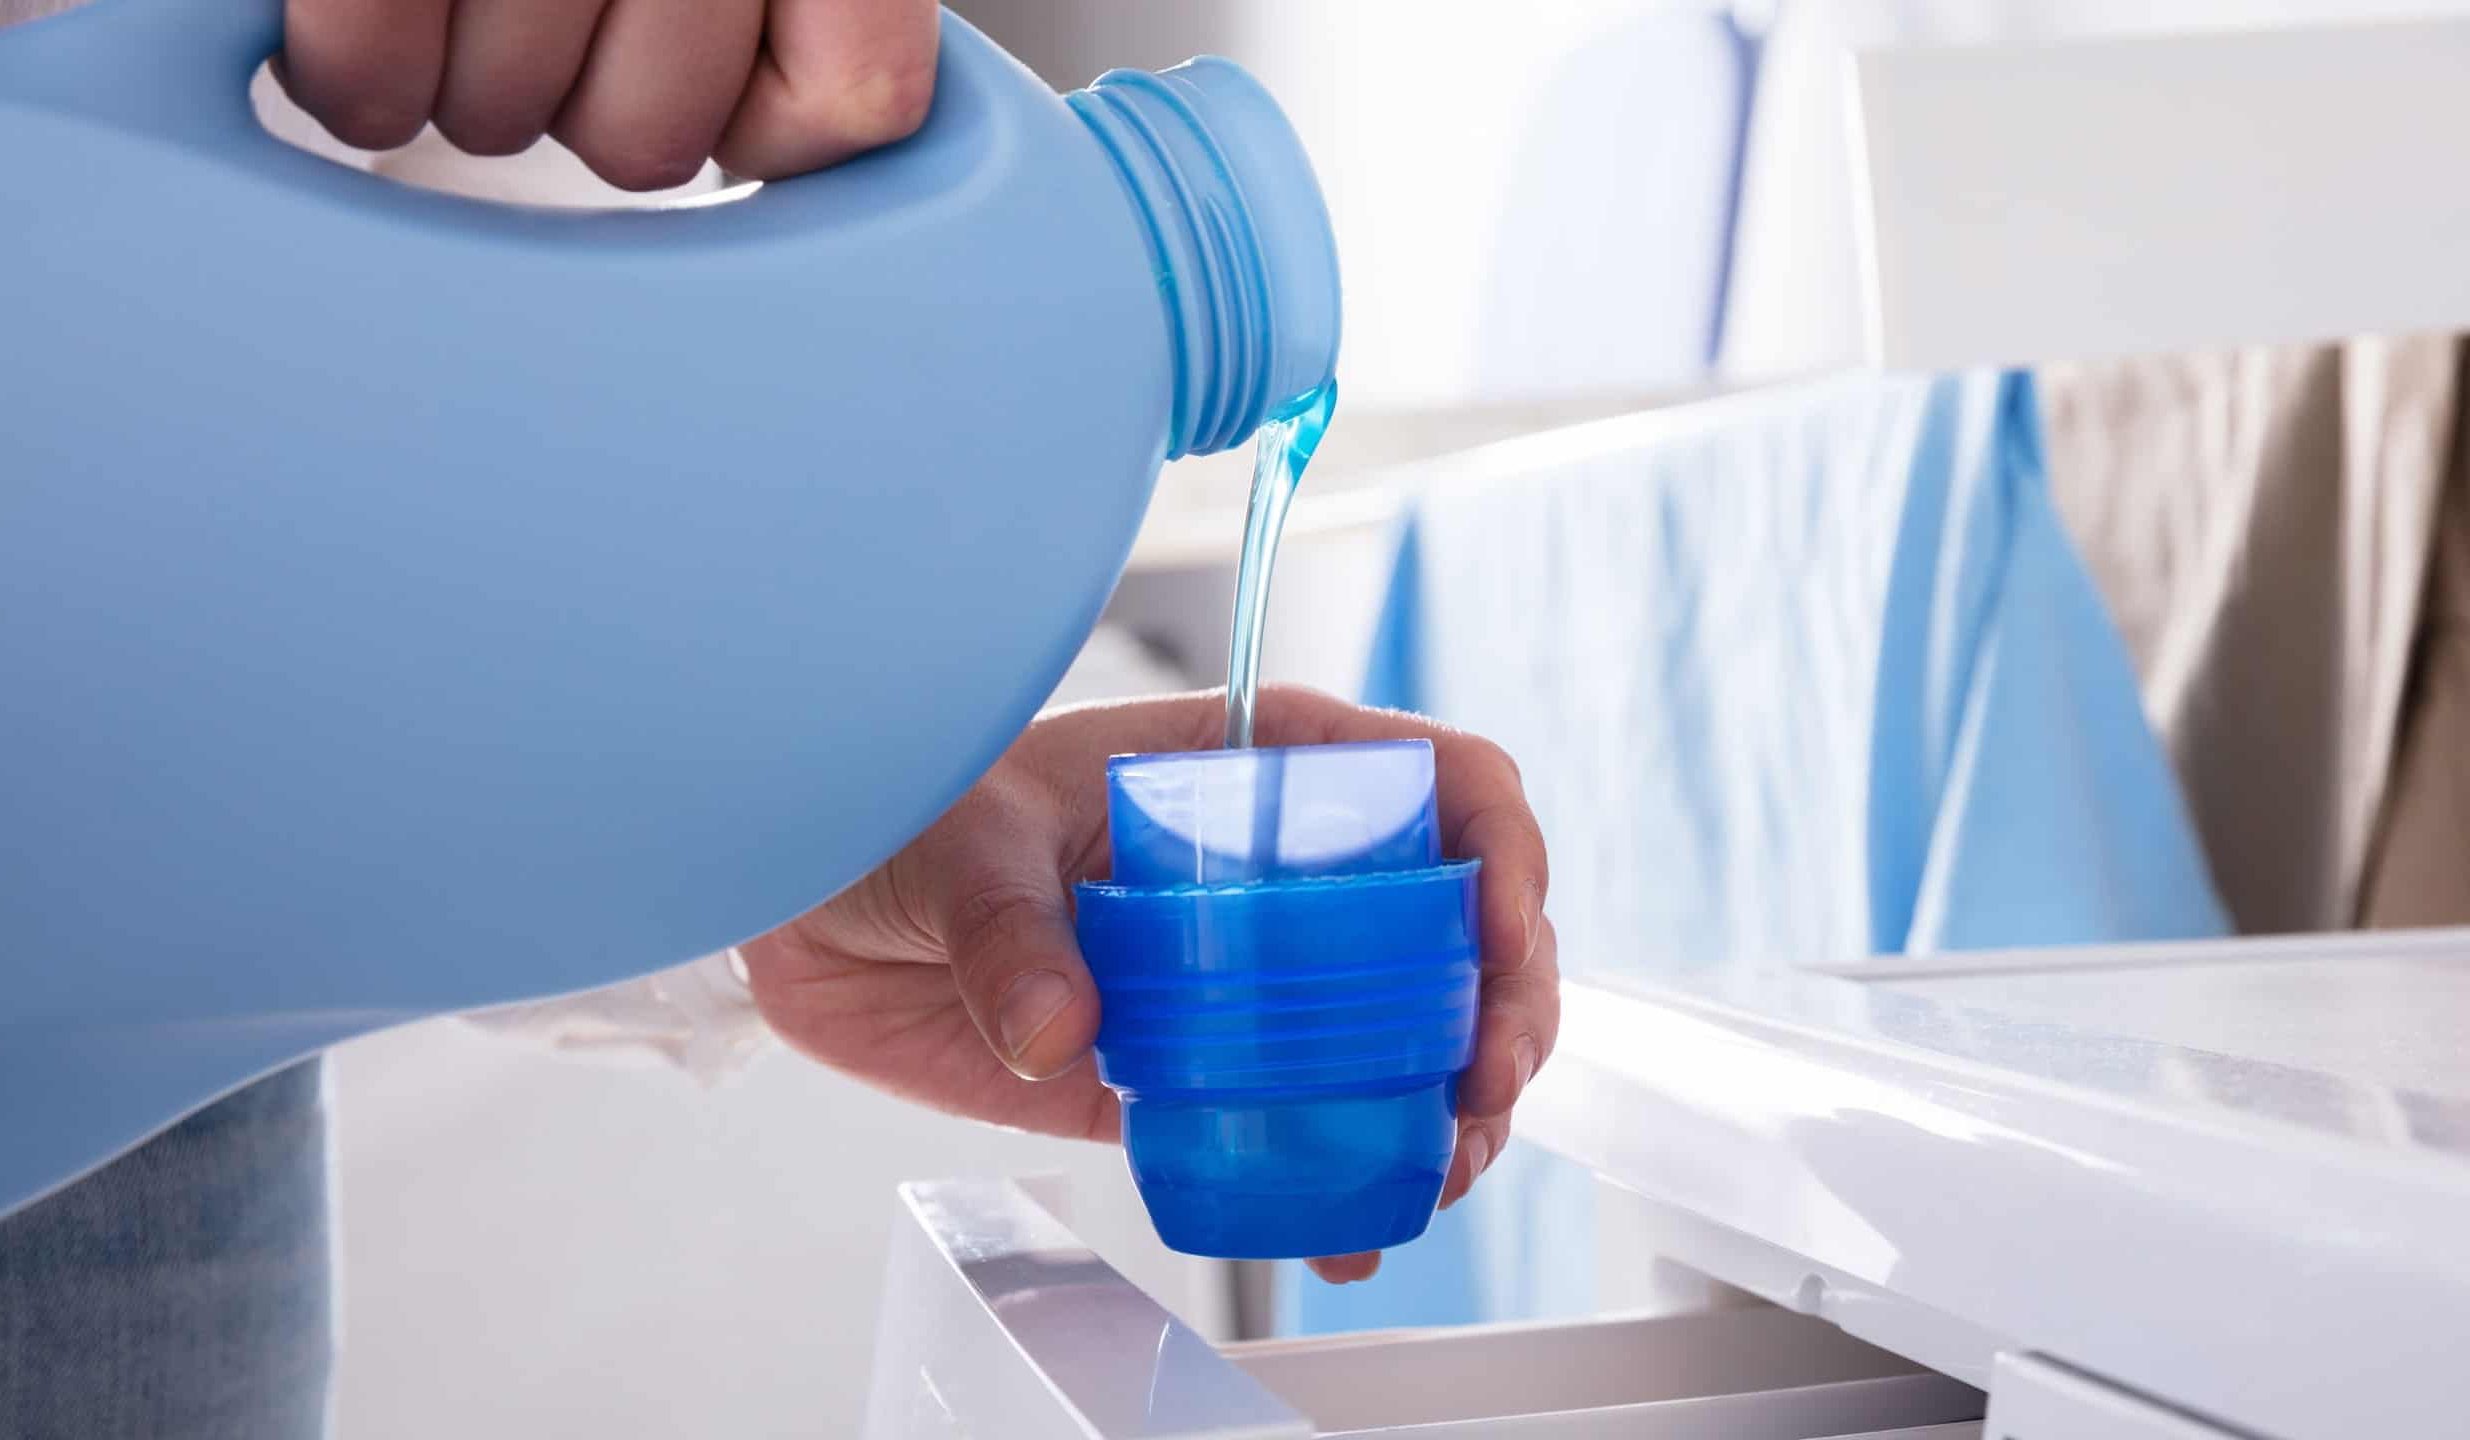  IFB liquid detergent Price List in 2023 